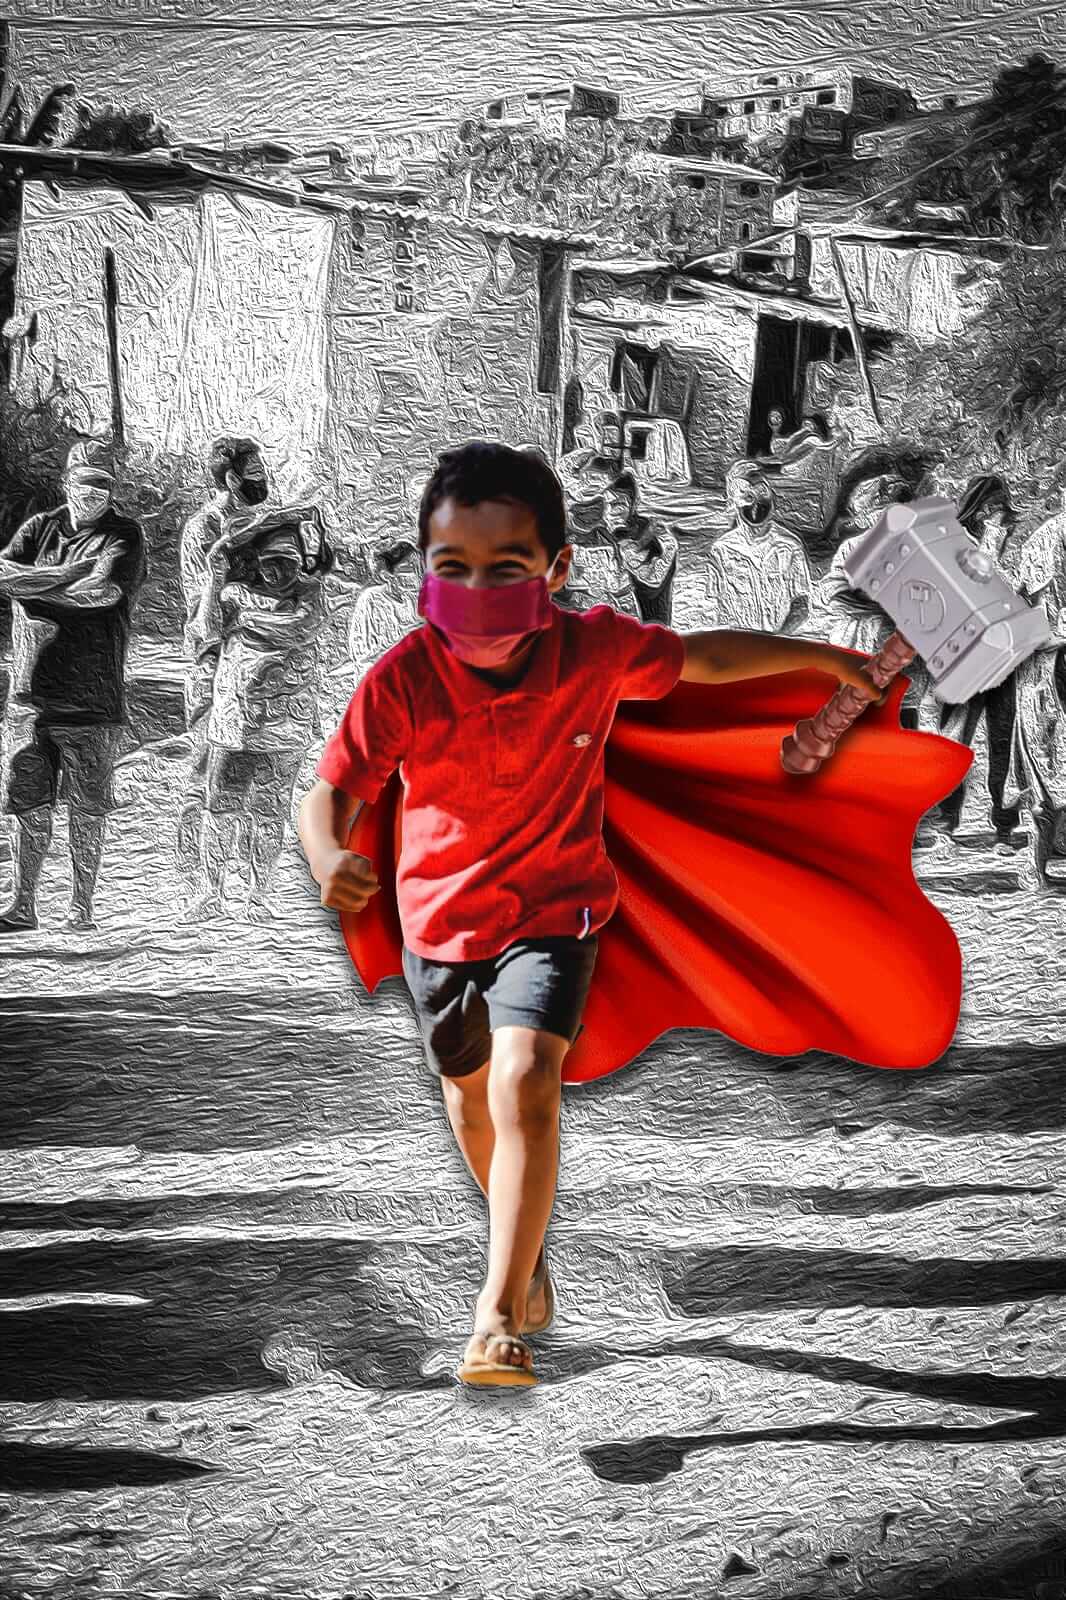 imagem de uma criança fantasiada de super-herói em meio a uma situação de miséria